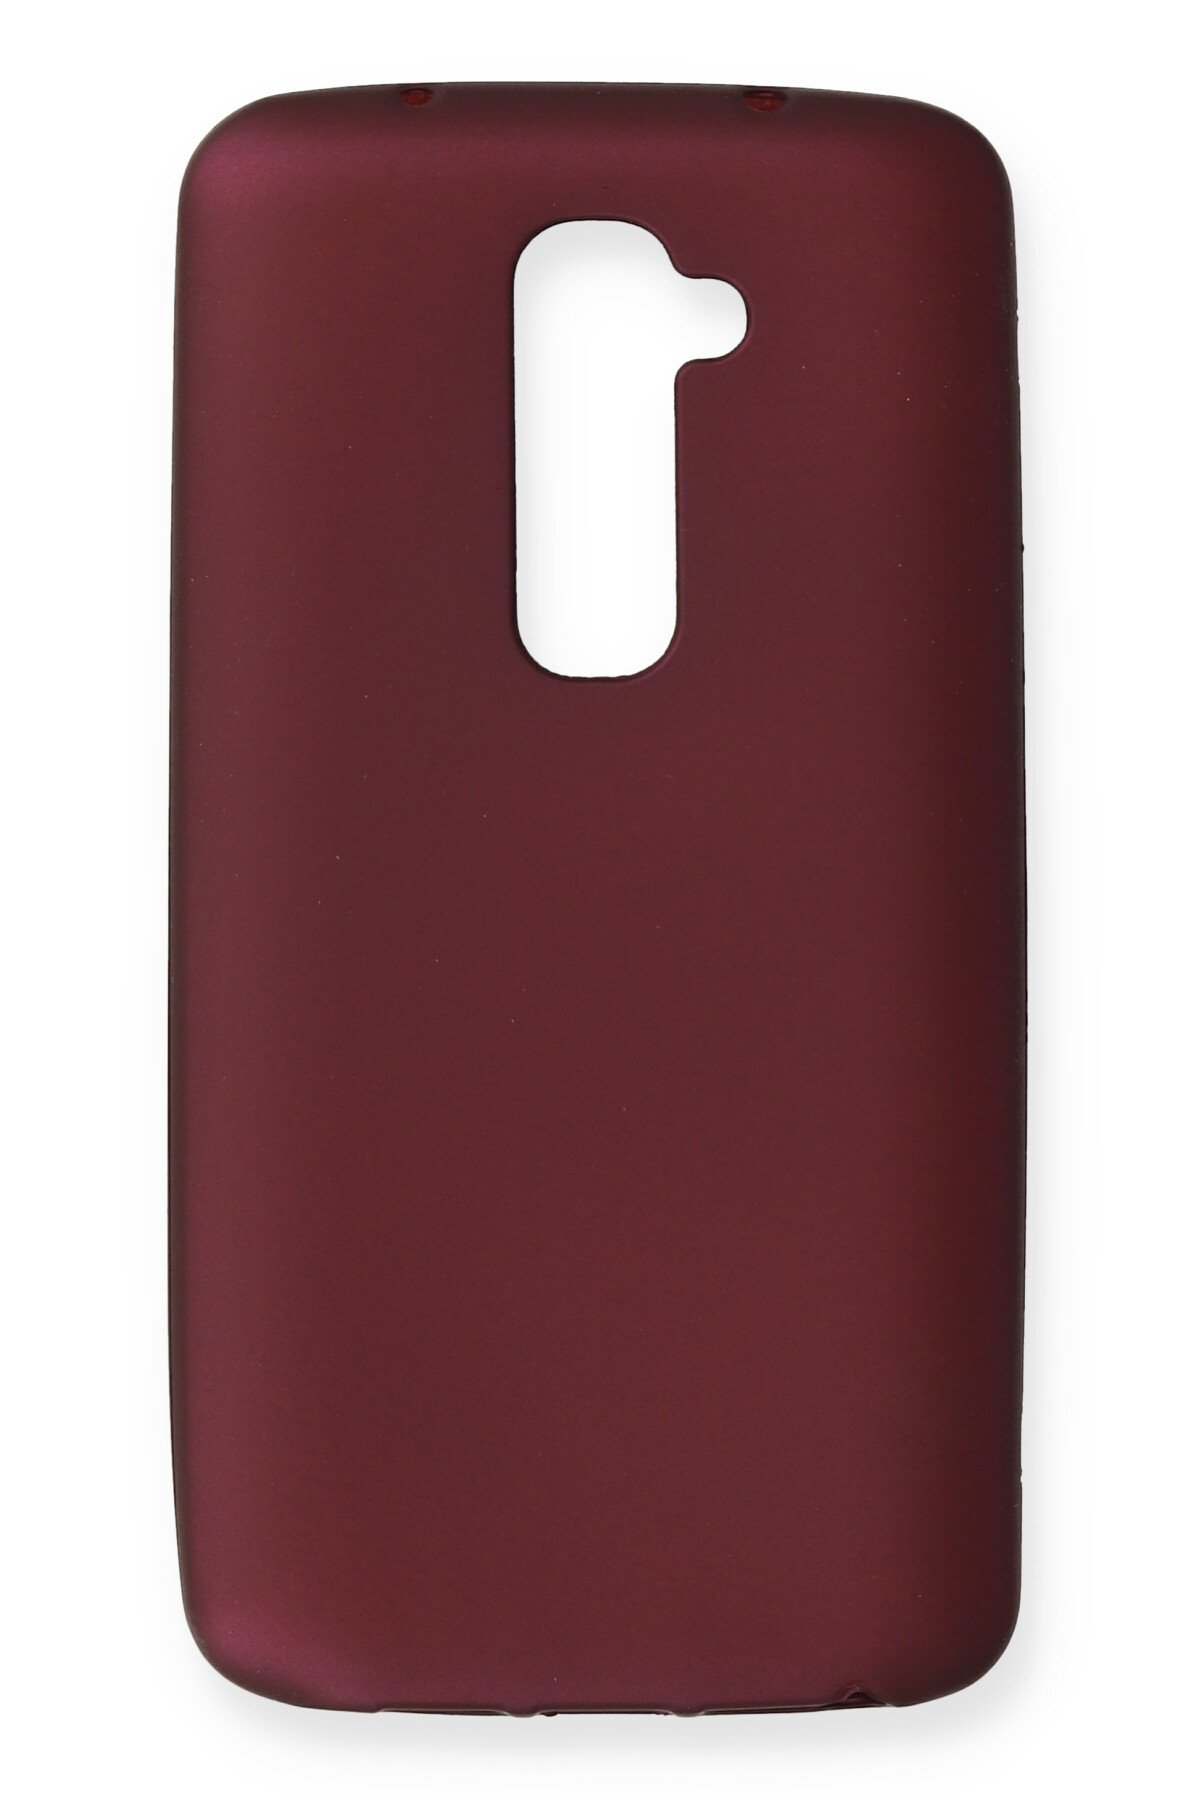 NewFace Newface LG G2 Kılıf Premium Rubber Silikon - Mürdüm